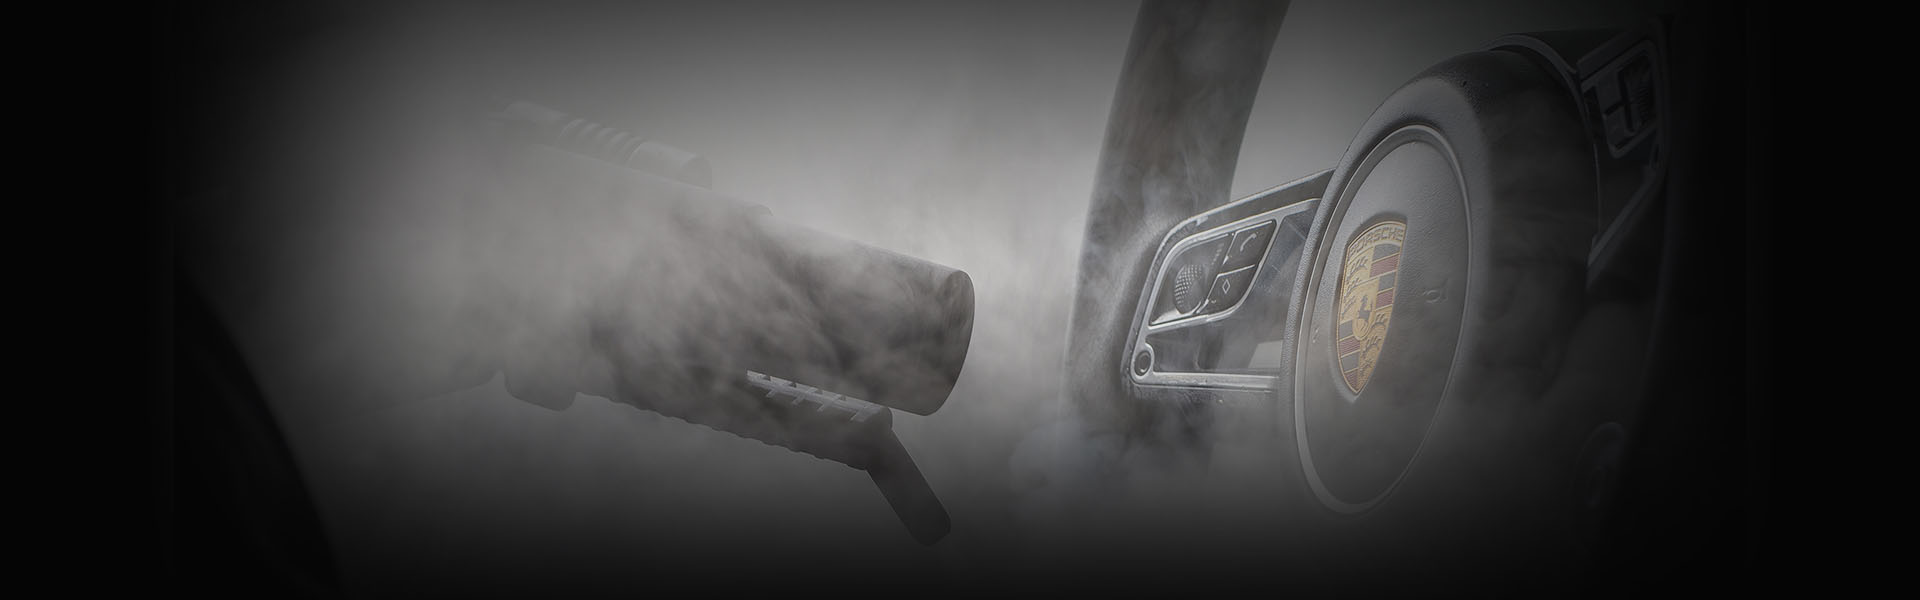 Lavaggio interni auto: i vantaggi del vapore con il sistema DettaglioAuto